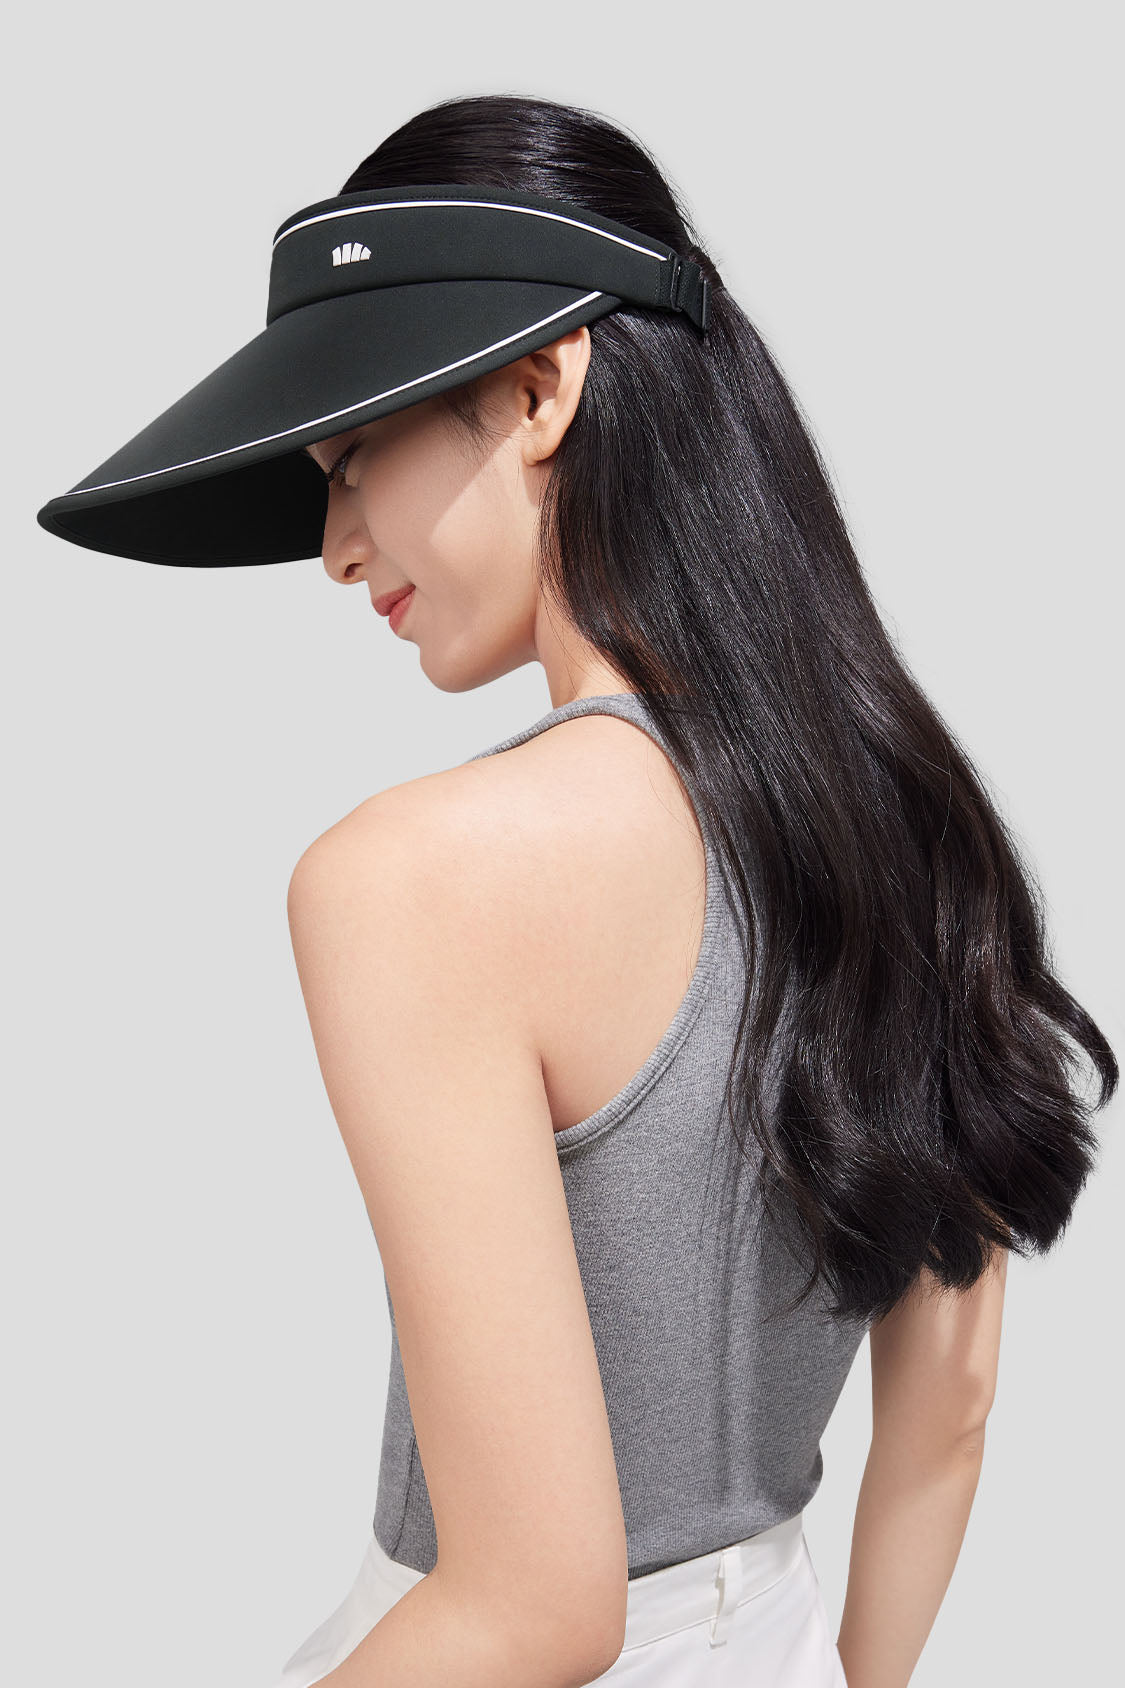  beneunder women's sun hats #color_black